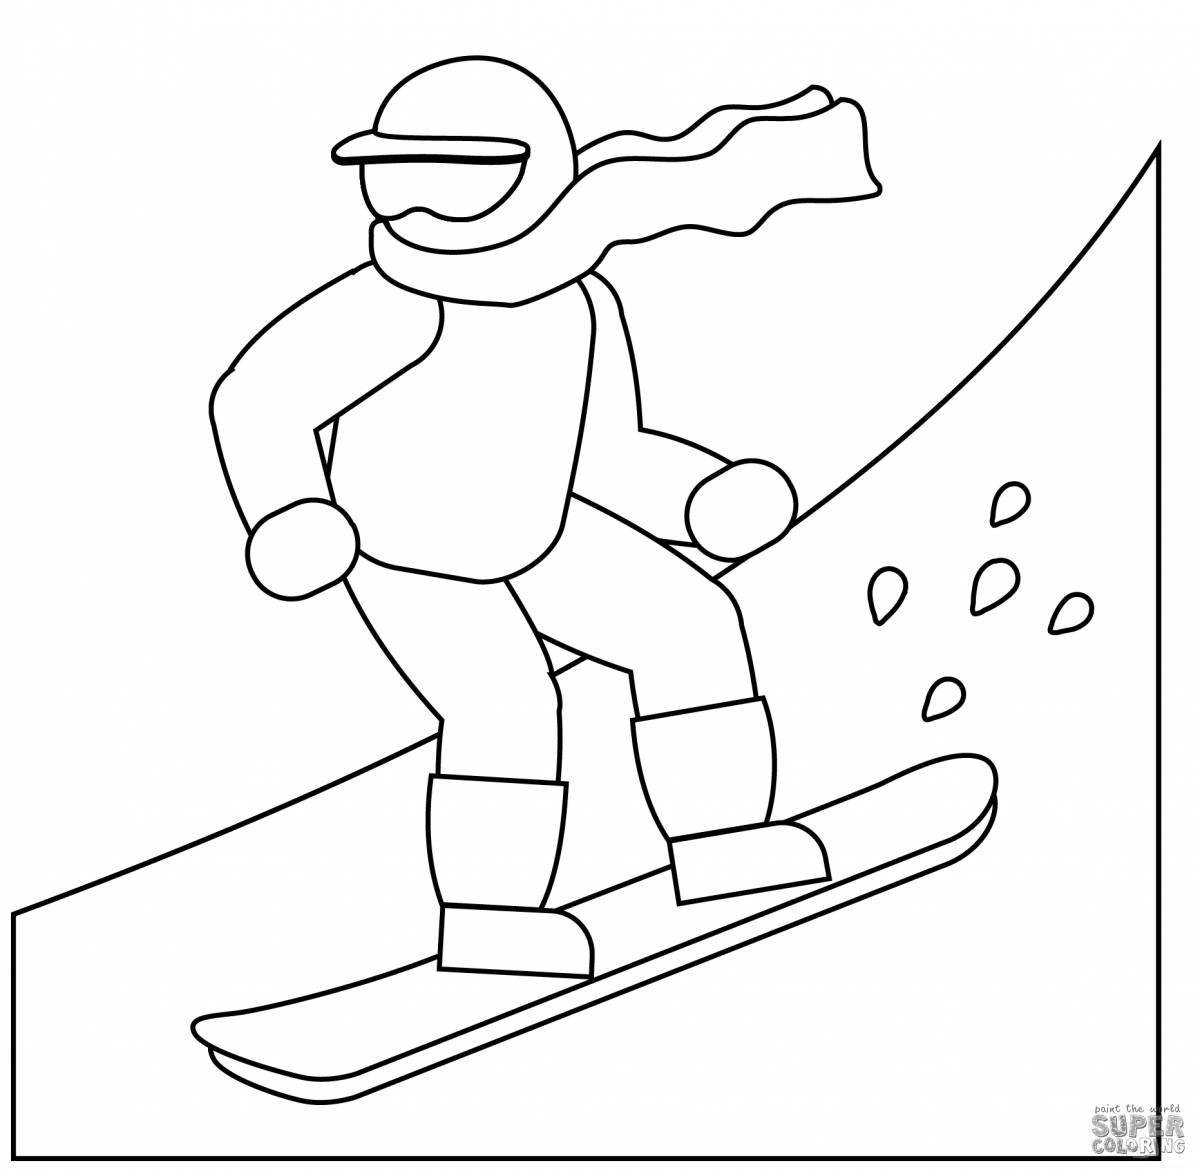 Snowboarder #2